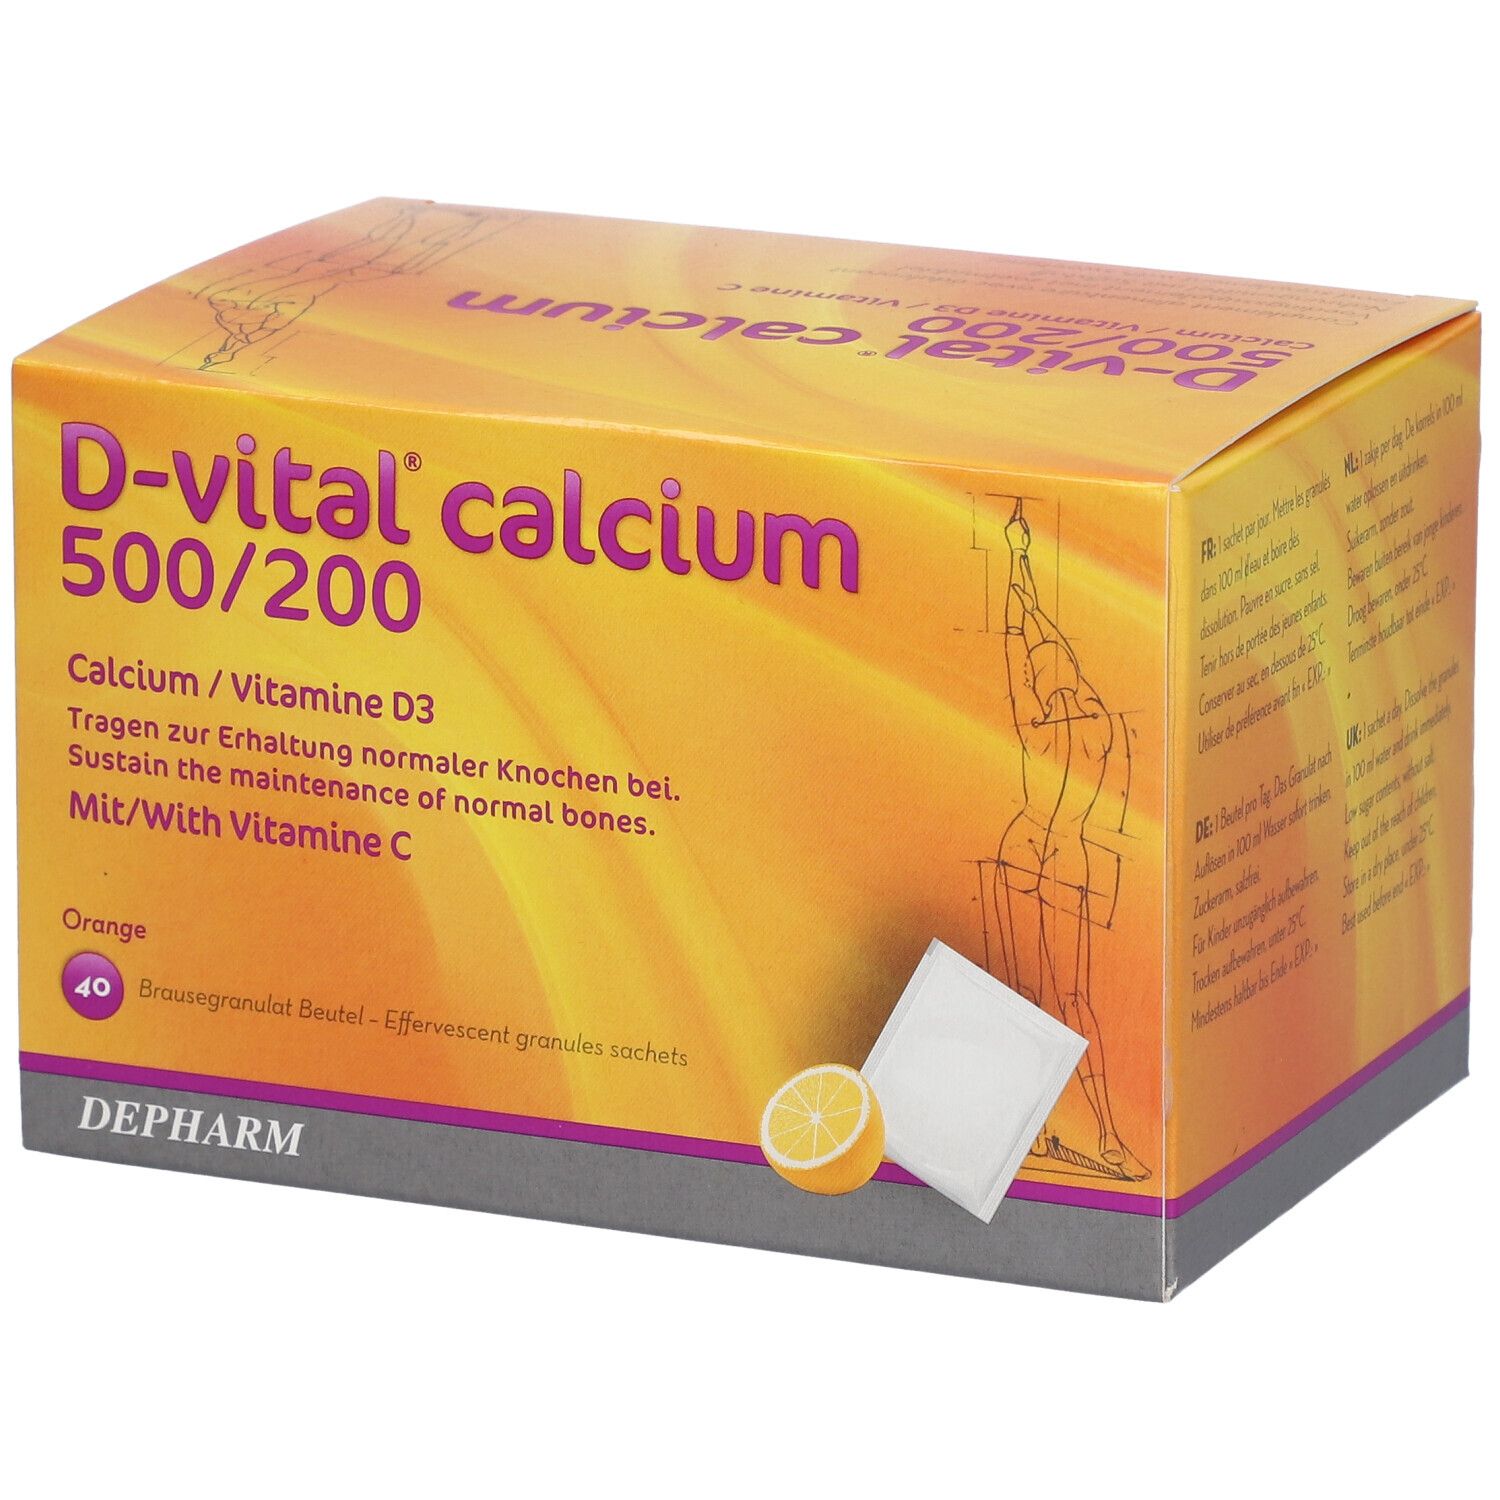 D-vital® calcium 500/200 goût orange